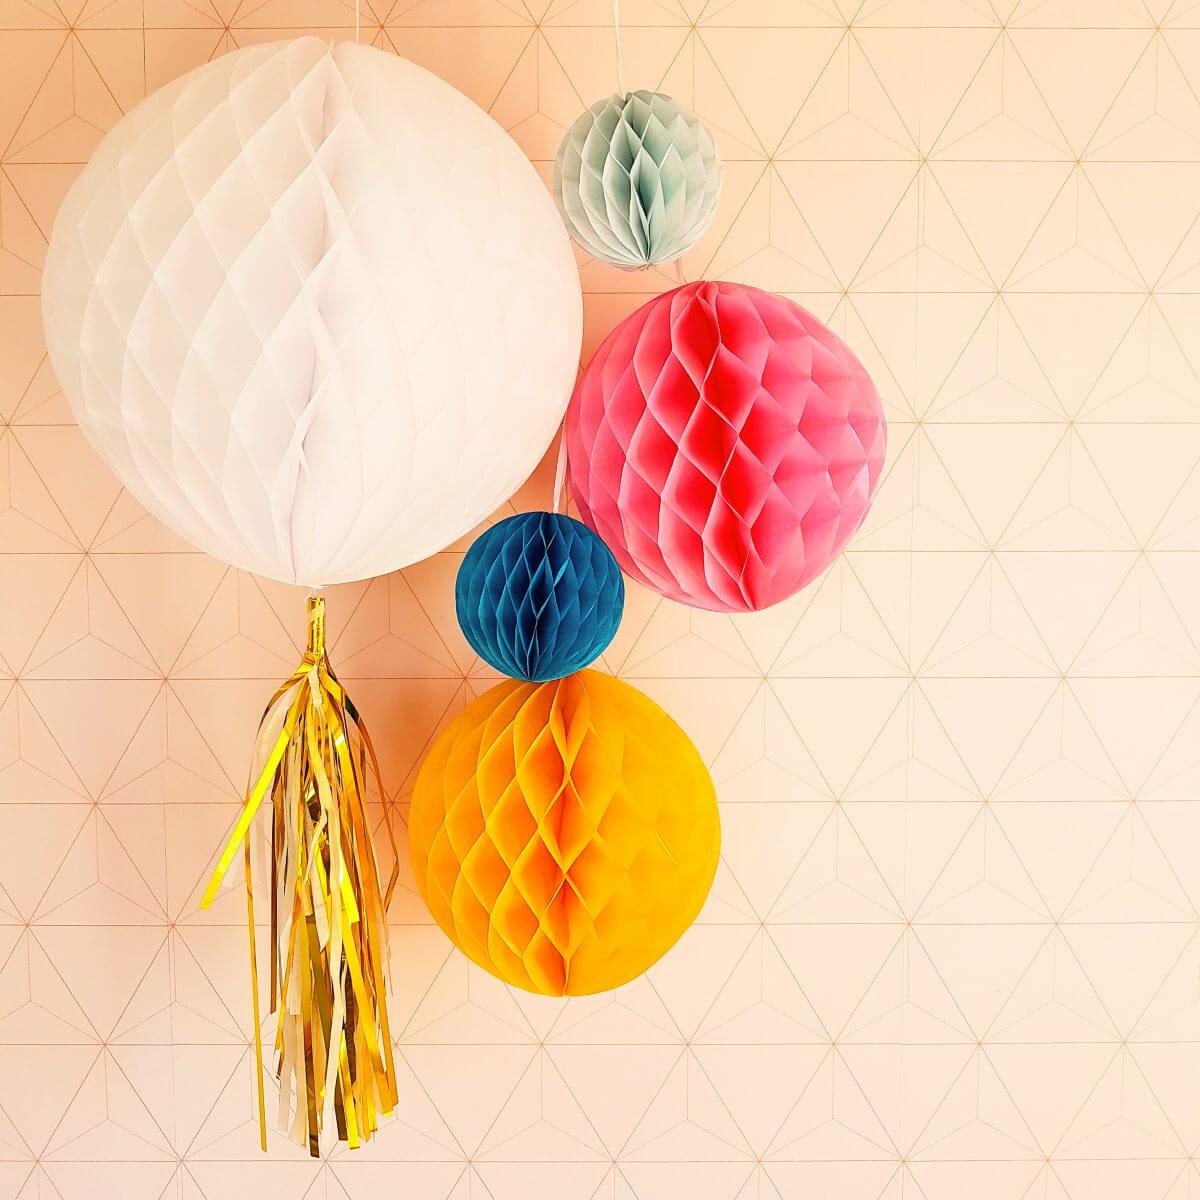 Raap bladeren op Versnel Ooit Milieuvriendelijk alternatief voor ballonnen: papieren honeycomb bollen  Leuk met kids